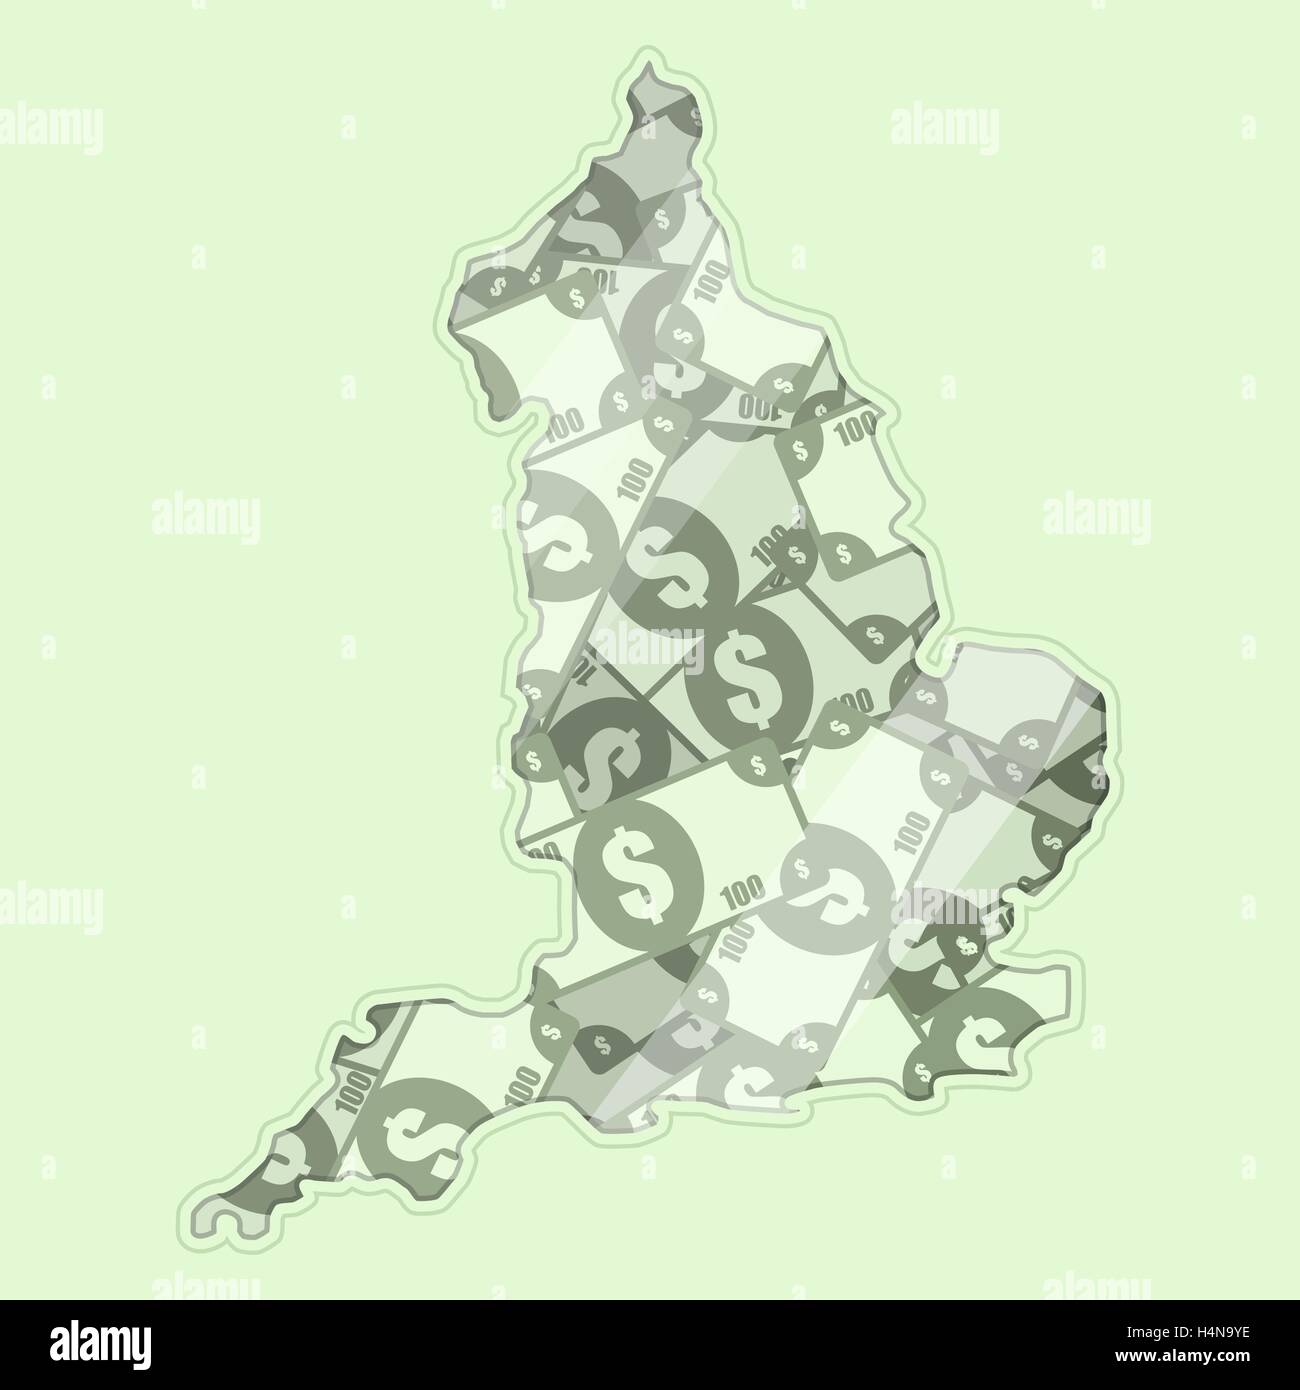 Landkarte England abgedeckt in Geld, Banknoten von 100 US-Dollar. Auf der Karte gibt es Glas Reflexion. Konzeptionelle. Stock Vektor